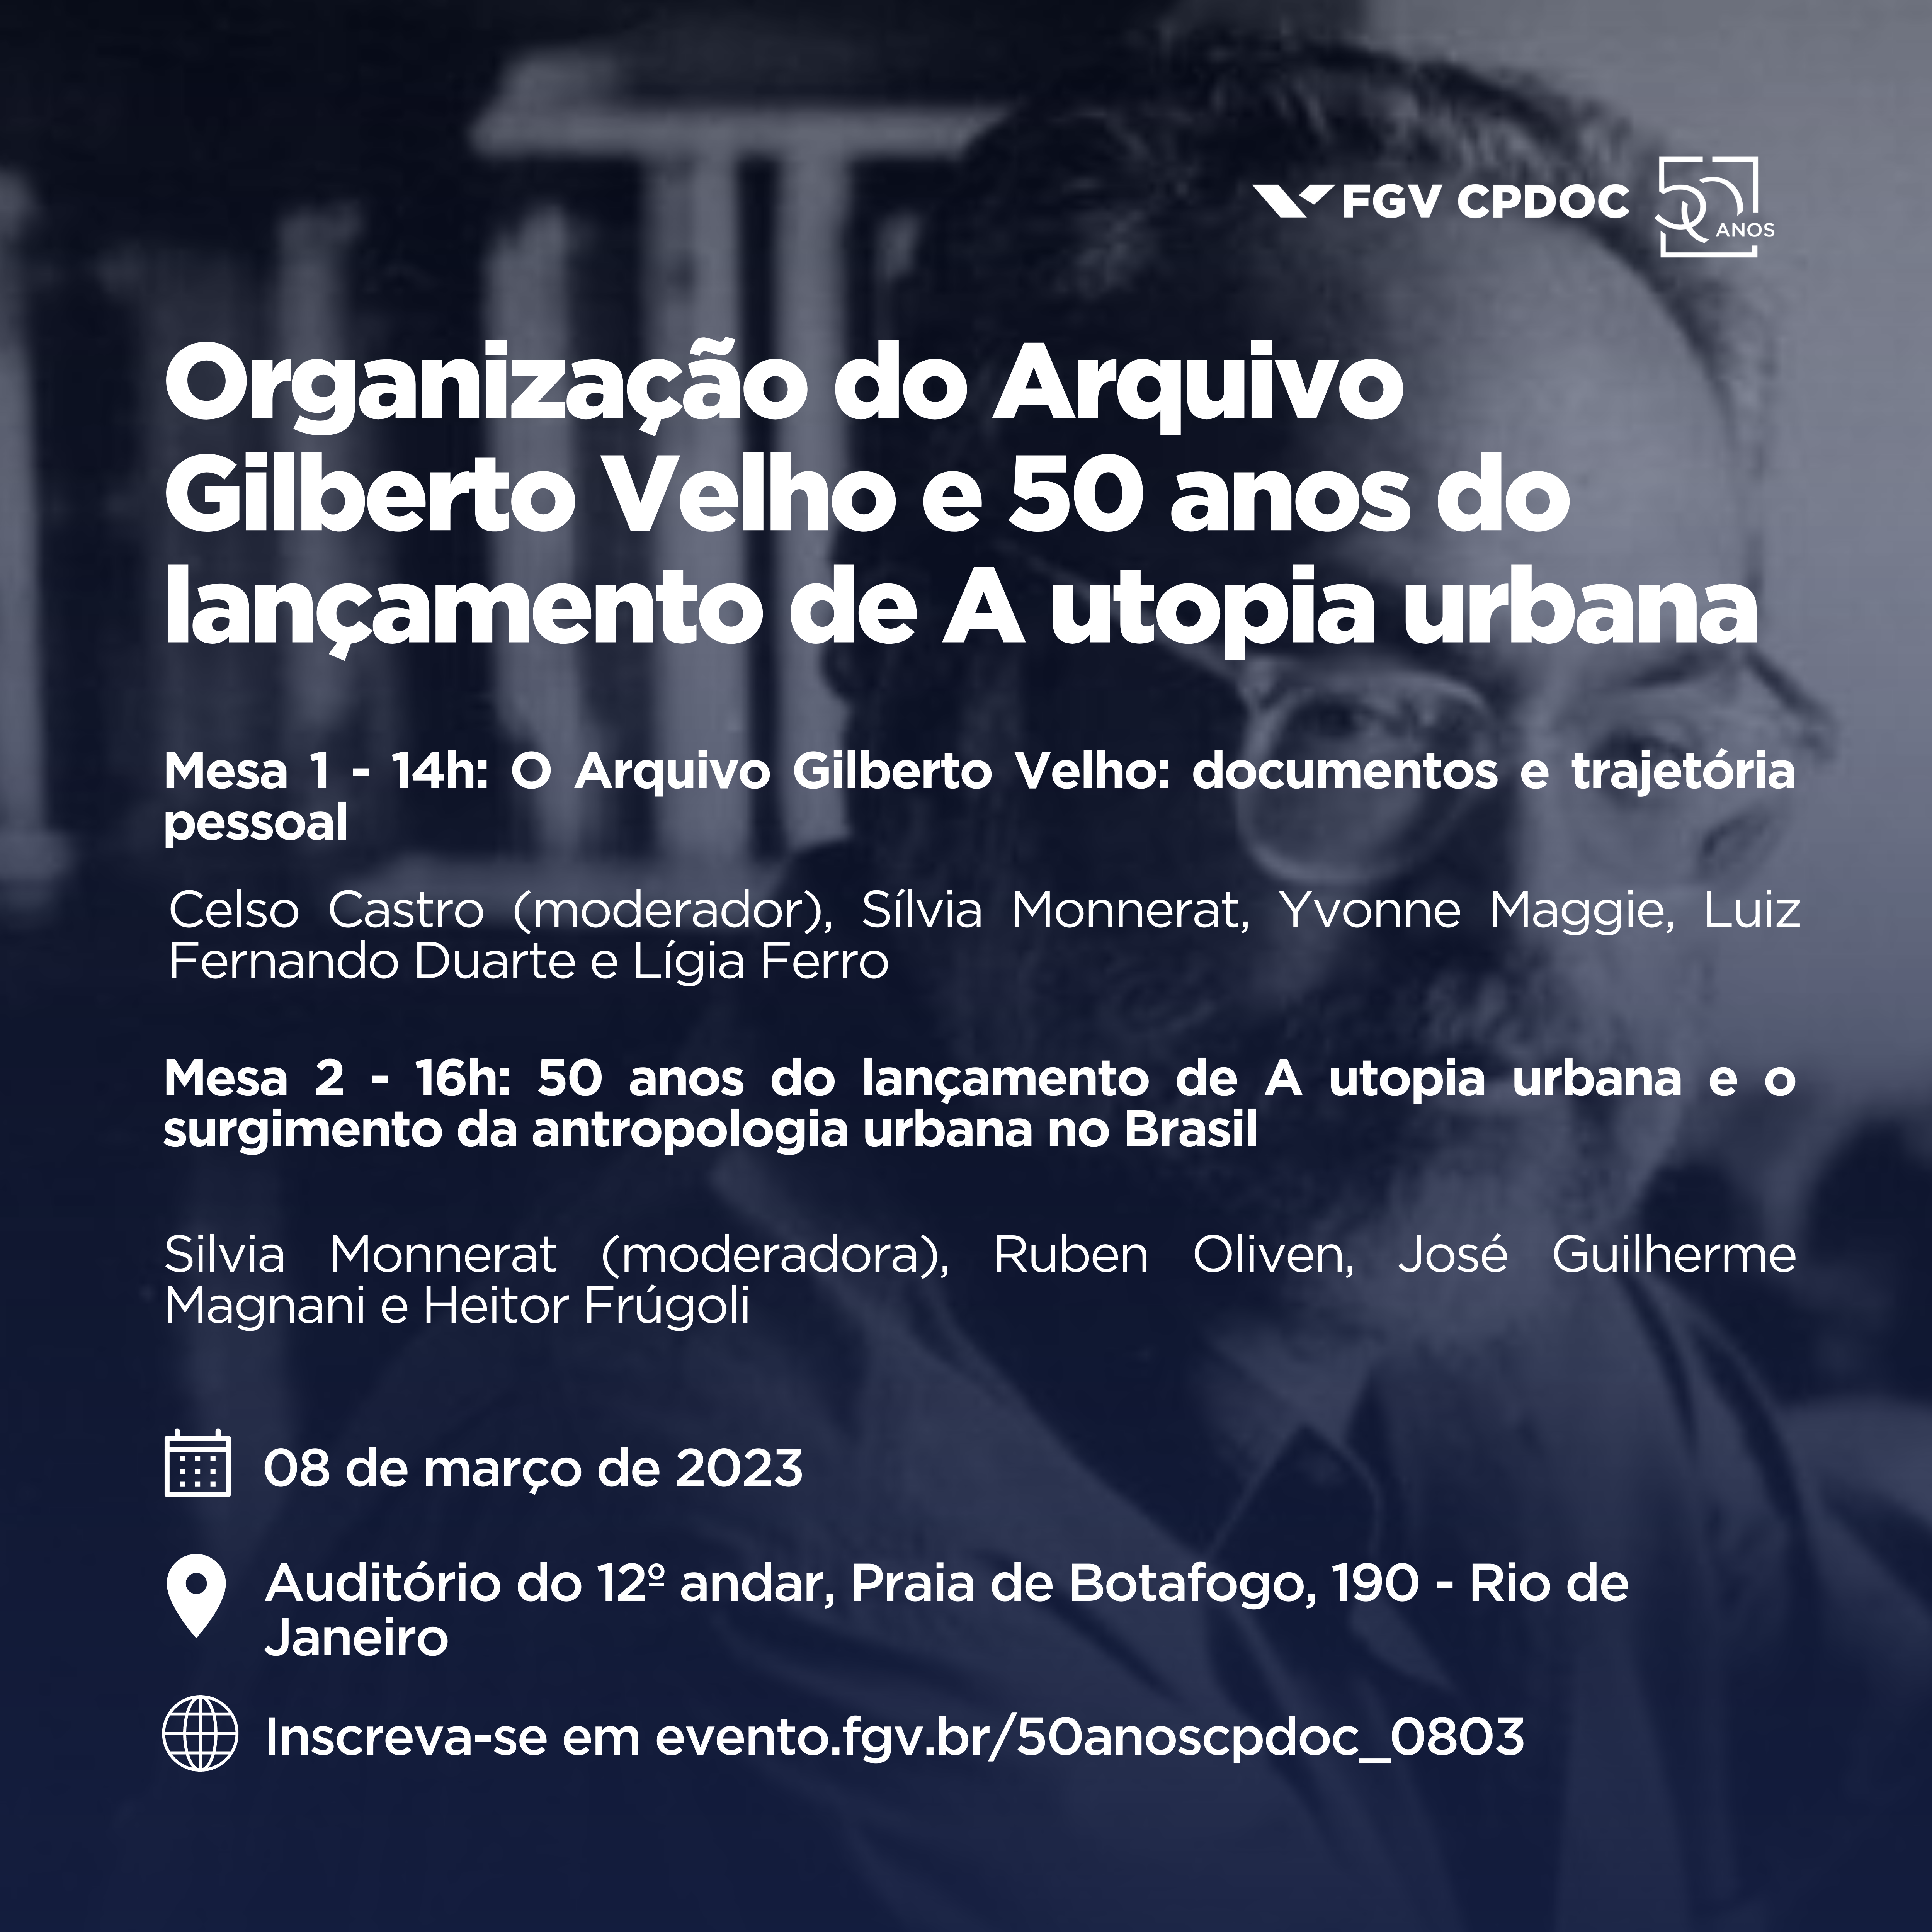 Evento no CPDOC em 8/3/2023: Organização do Arquivo Gilberto Velho e 50 anos do lançamento de A utopia urbana, com a participação de José Guilherme Magnani e Heitor Frúgoli Jr.